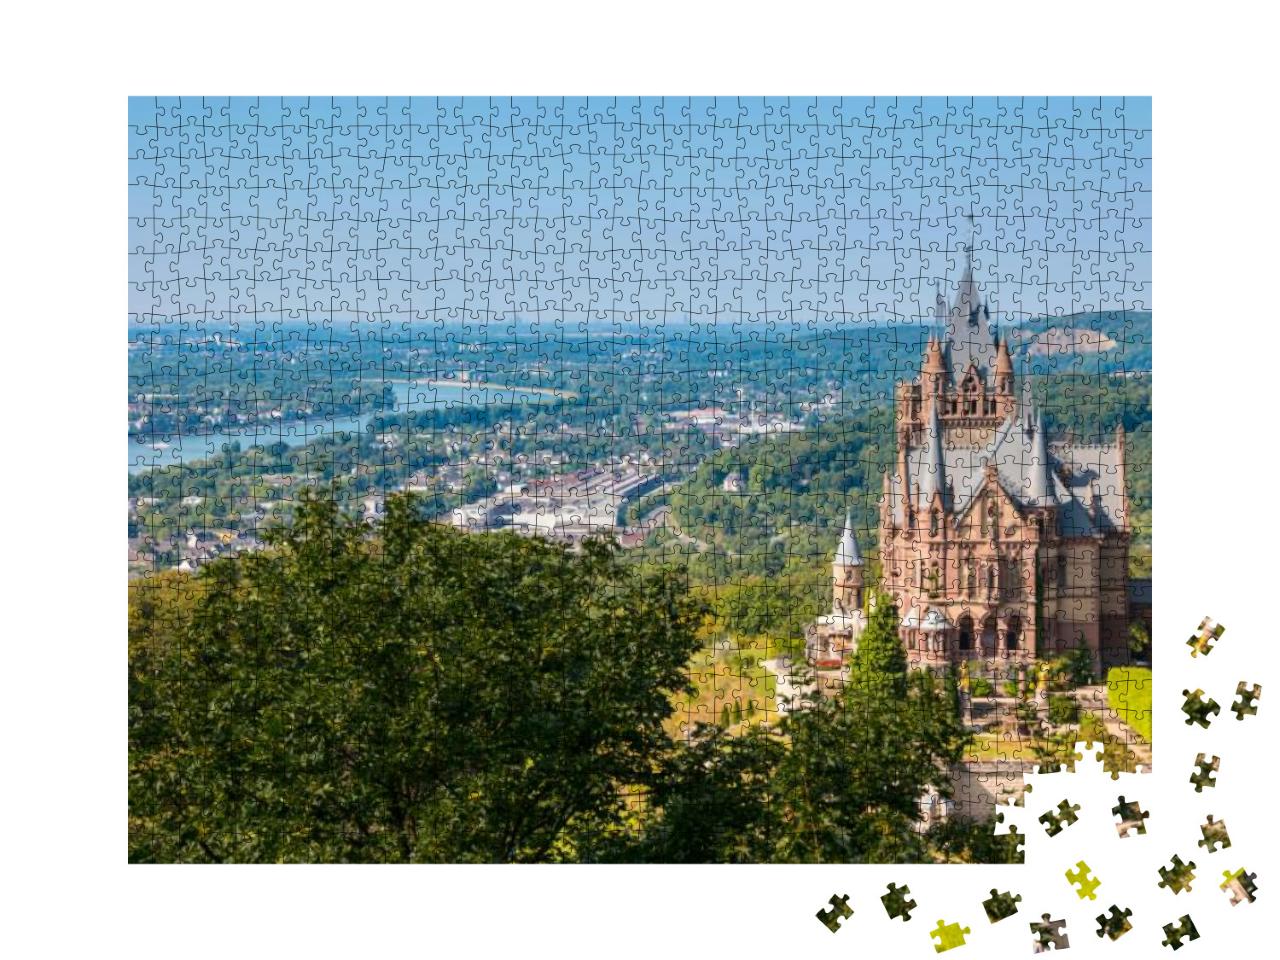 Drachenburg Castle At Bonn, Germany... Jigsaw Puzzle with 1000 pieces